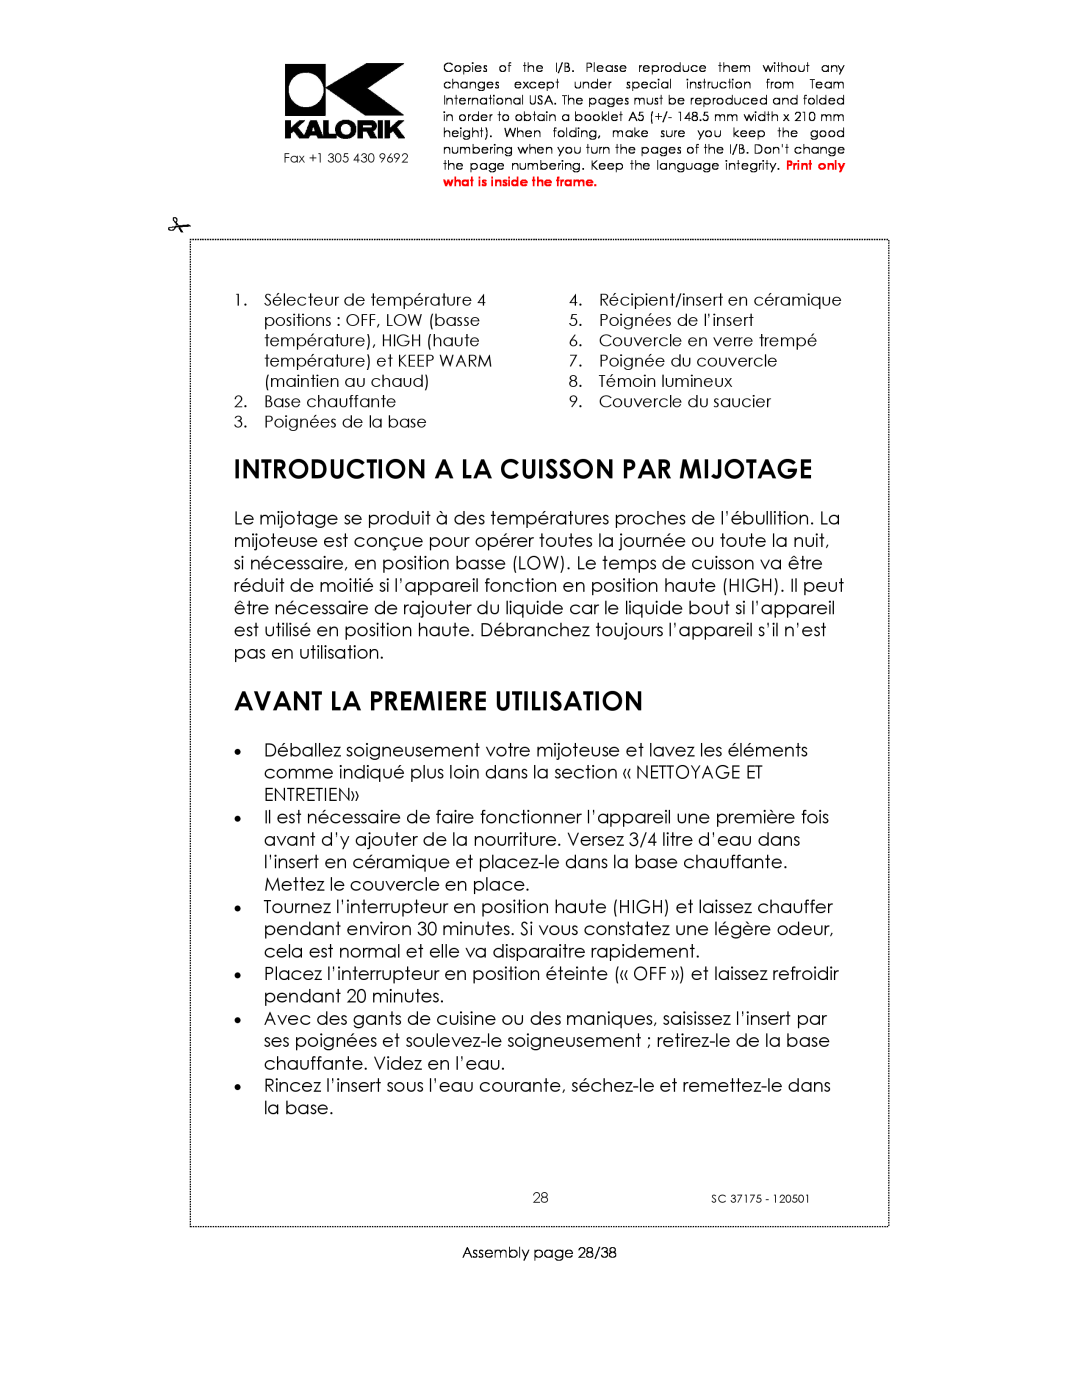 Kalorik SC 37175 manual Introduction A La Cuisson Par Mijotage, Avant La Premiere Utilisation 